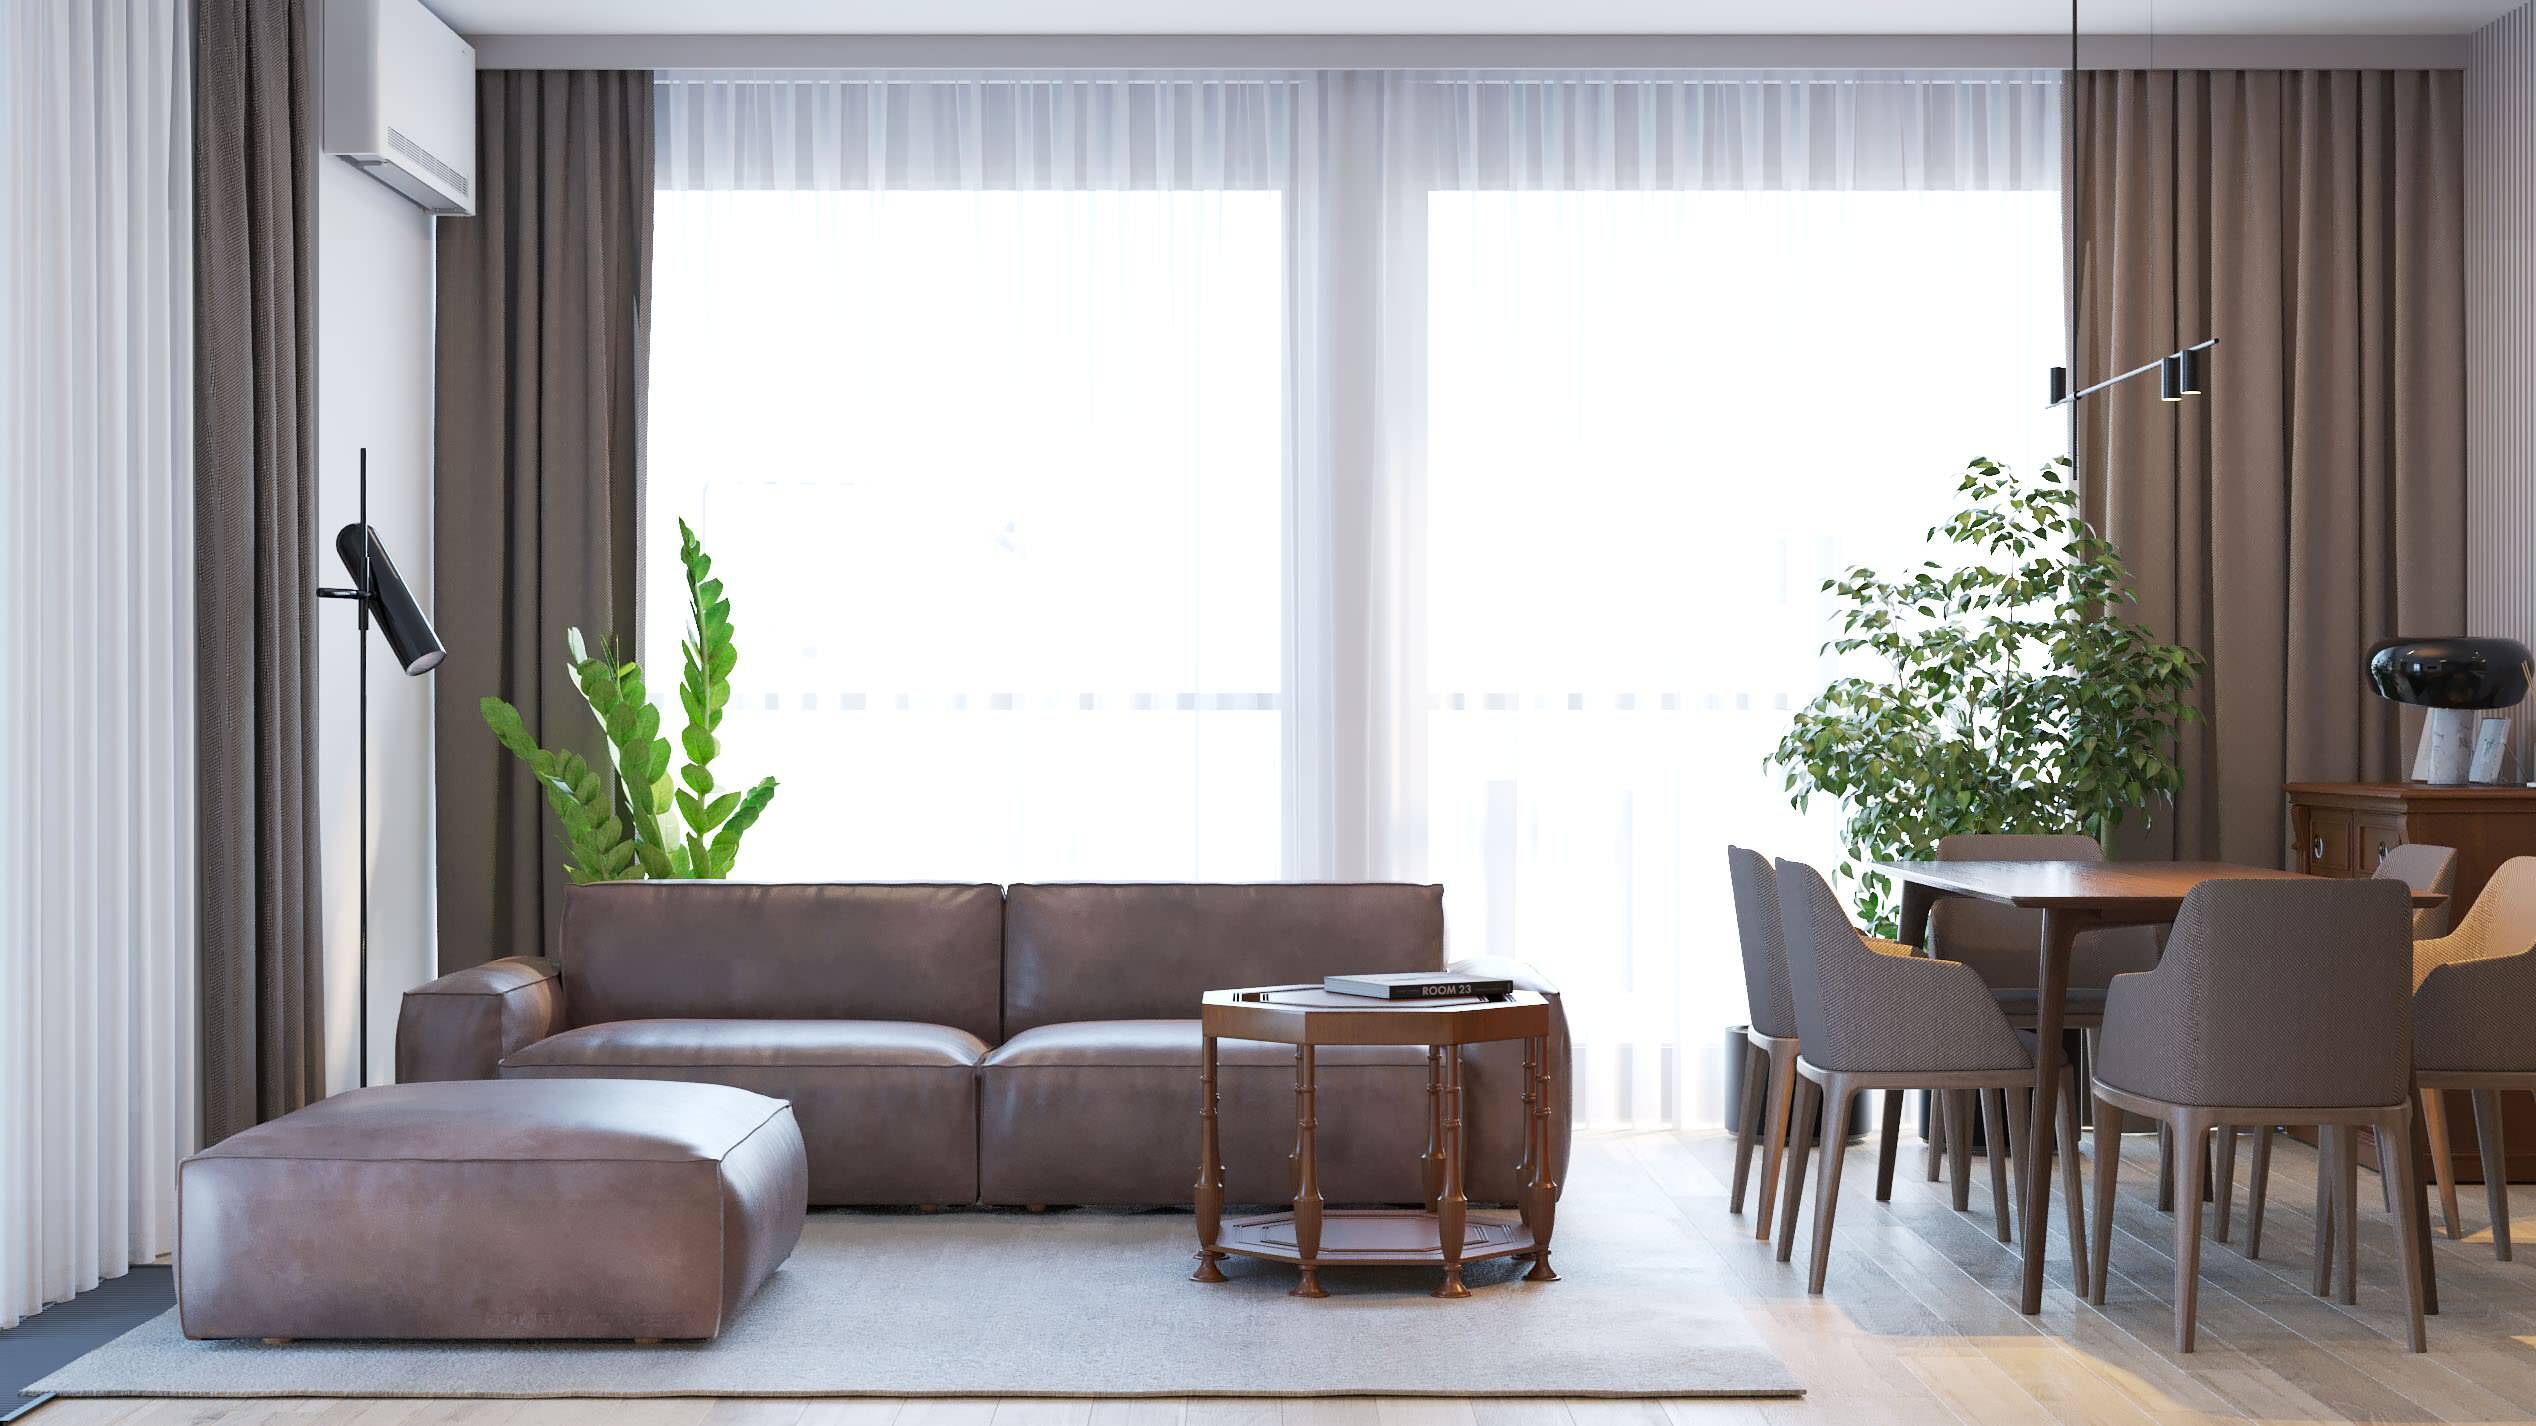 Интерьер гостиной с окном и вертикальными жалюзи